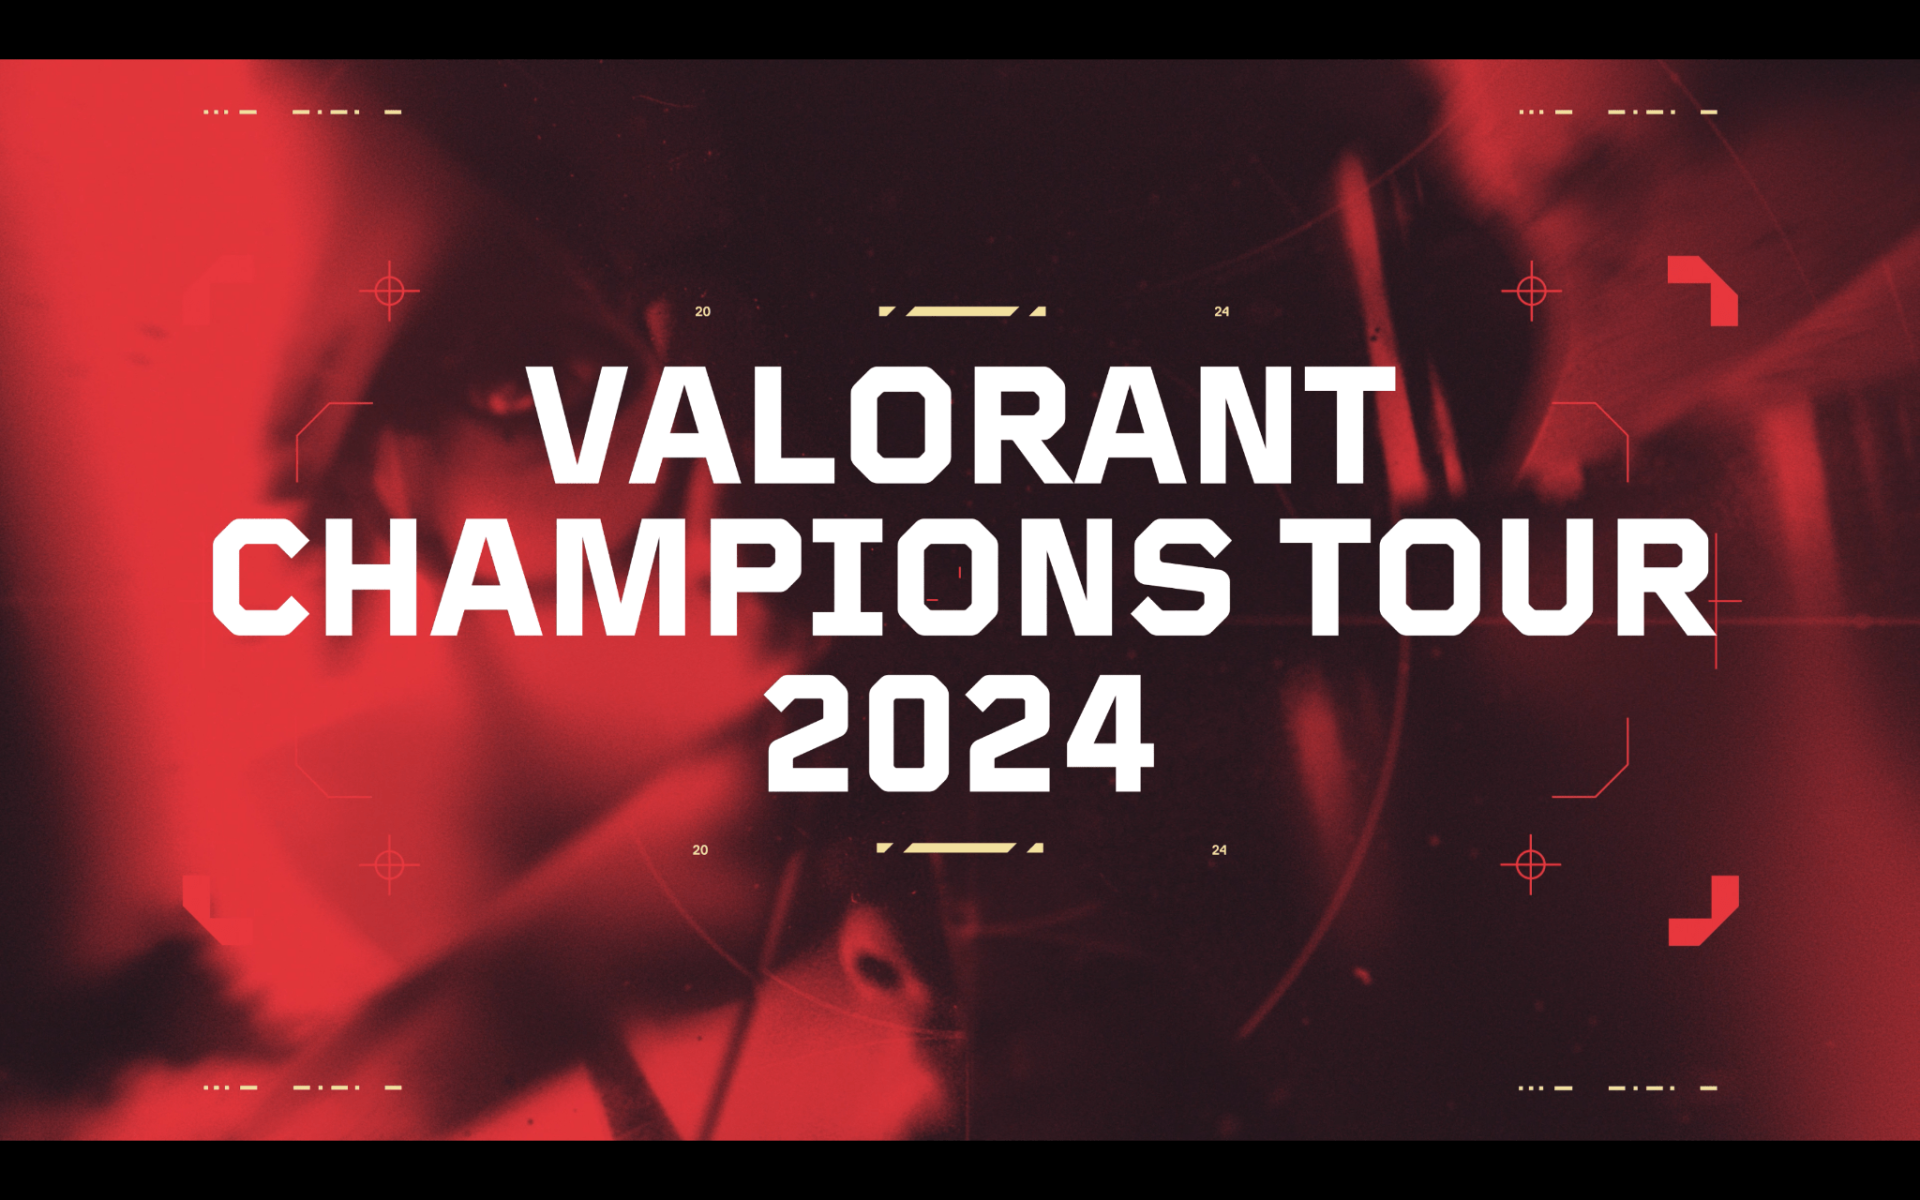 VALORANT Reveals Masters Tokyo Merch - Valorant Tracker